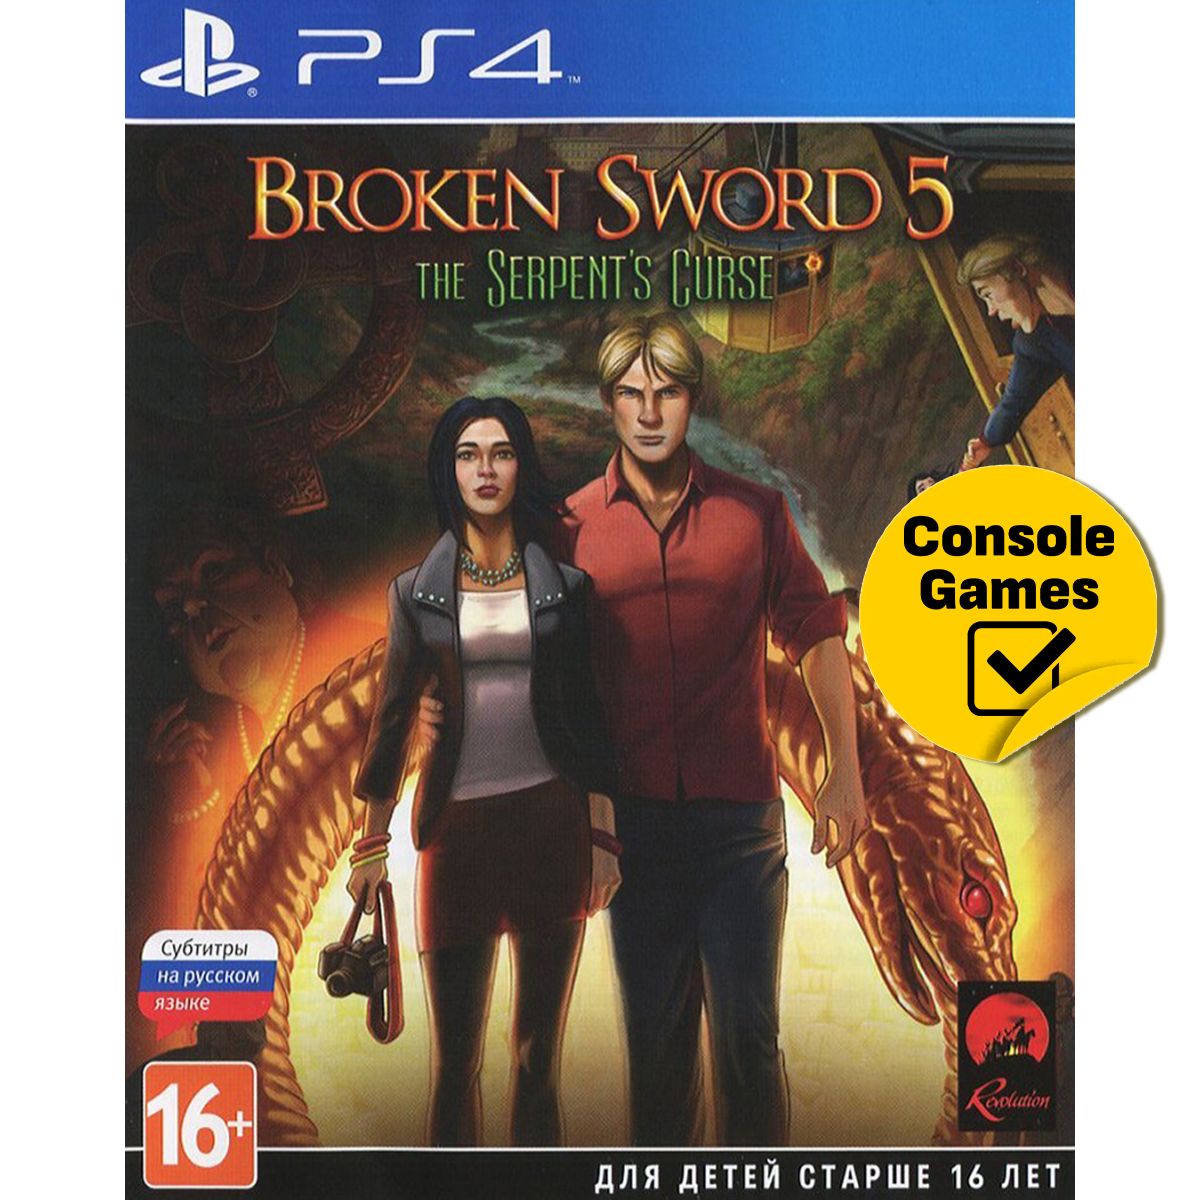 Game is broken. Broken Sword квест. Broken Sword 5 the Serpent's Curse ps4. Broken Sword: the Serpent's Curse об игре. Сломанный меч игра.